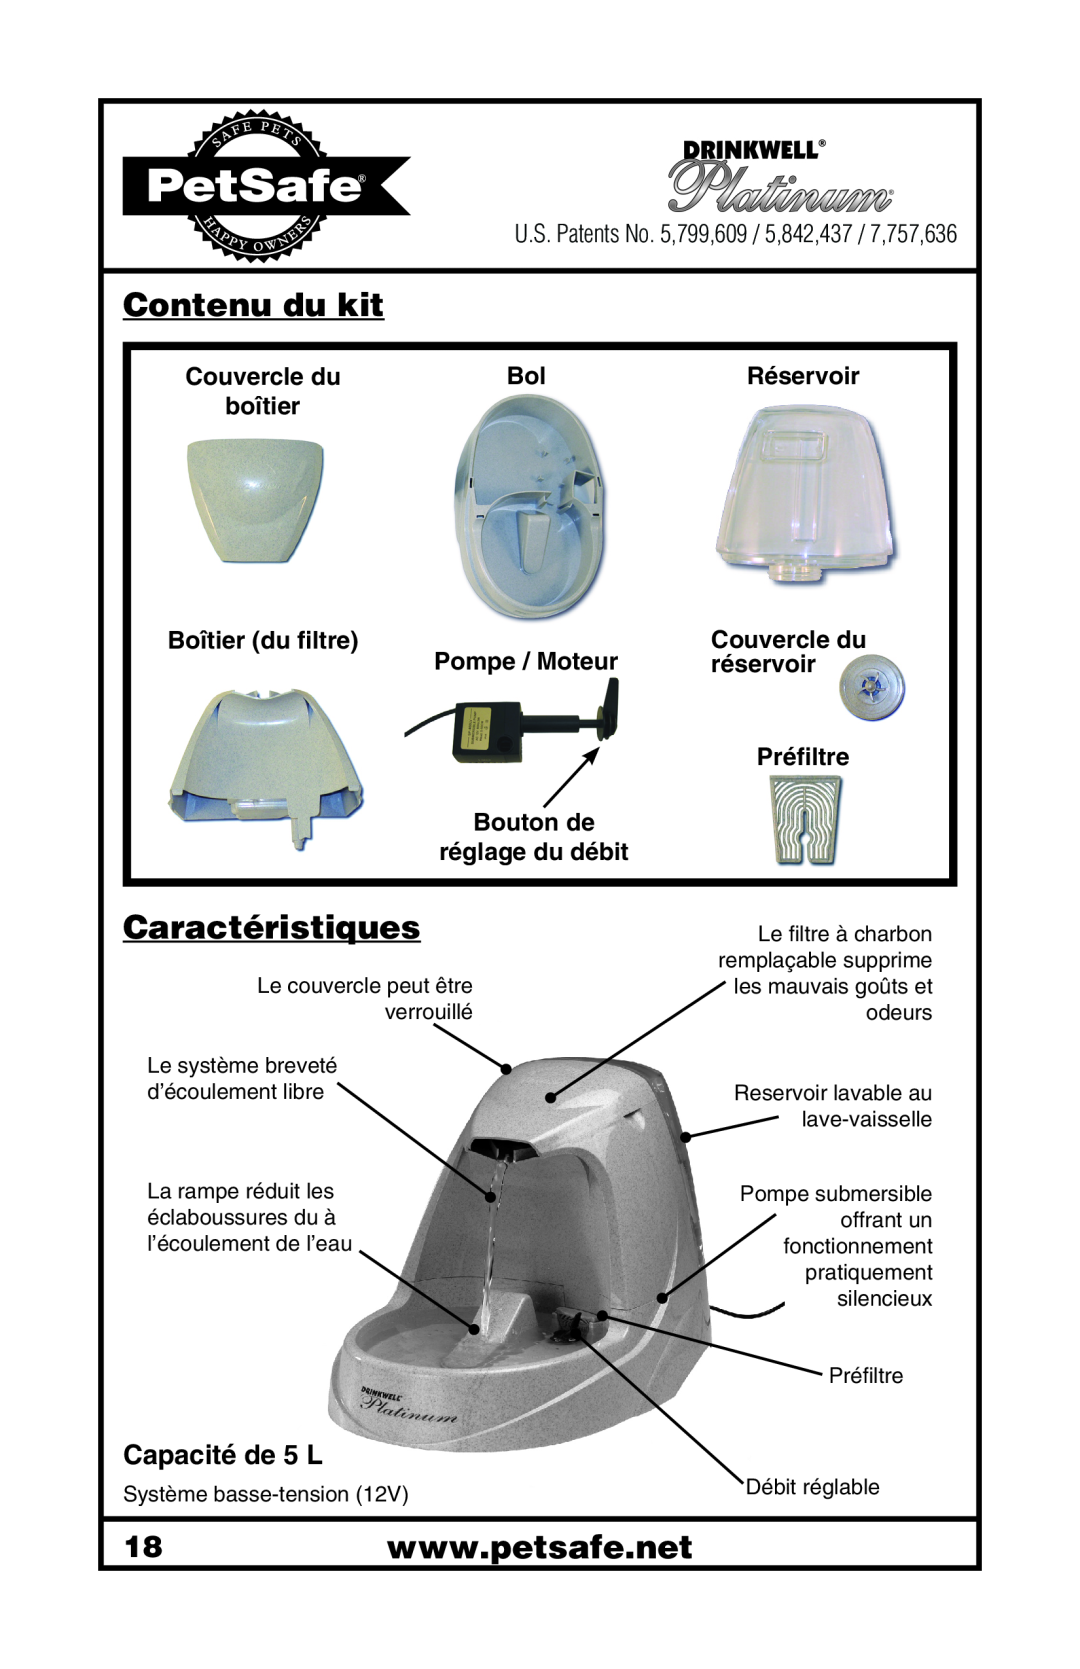 Petsafe 400-1255-19 Contenu du kit, Caractéristiques, Couvercle du, Réservoir, boîtier, Boîtier du filtre, Pompe / Moteur 